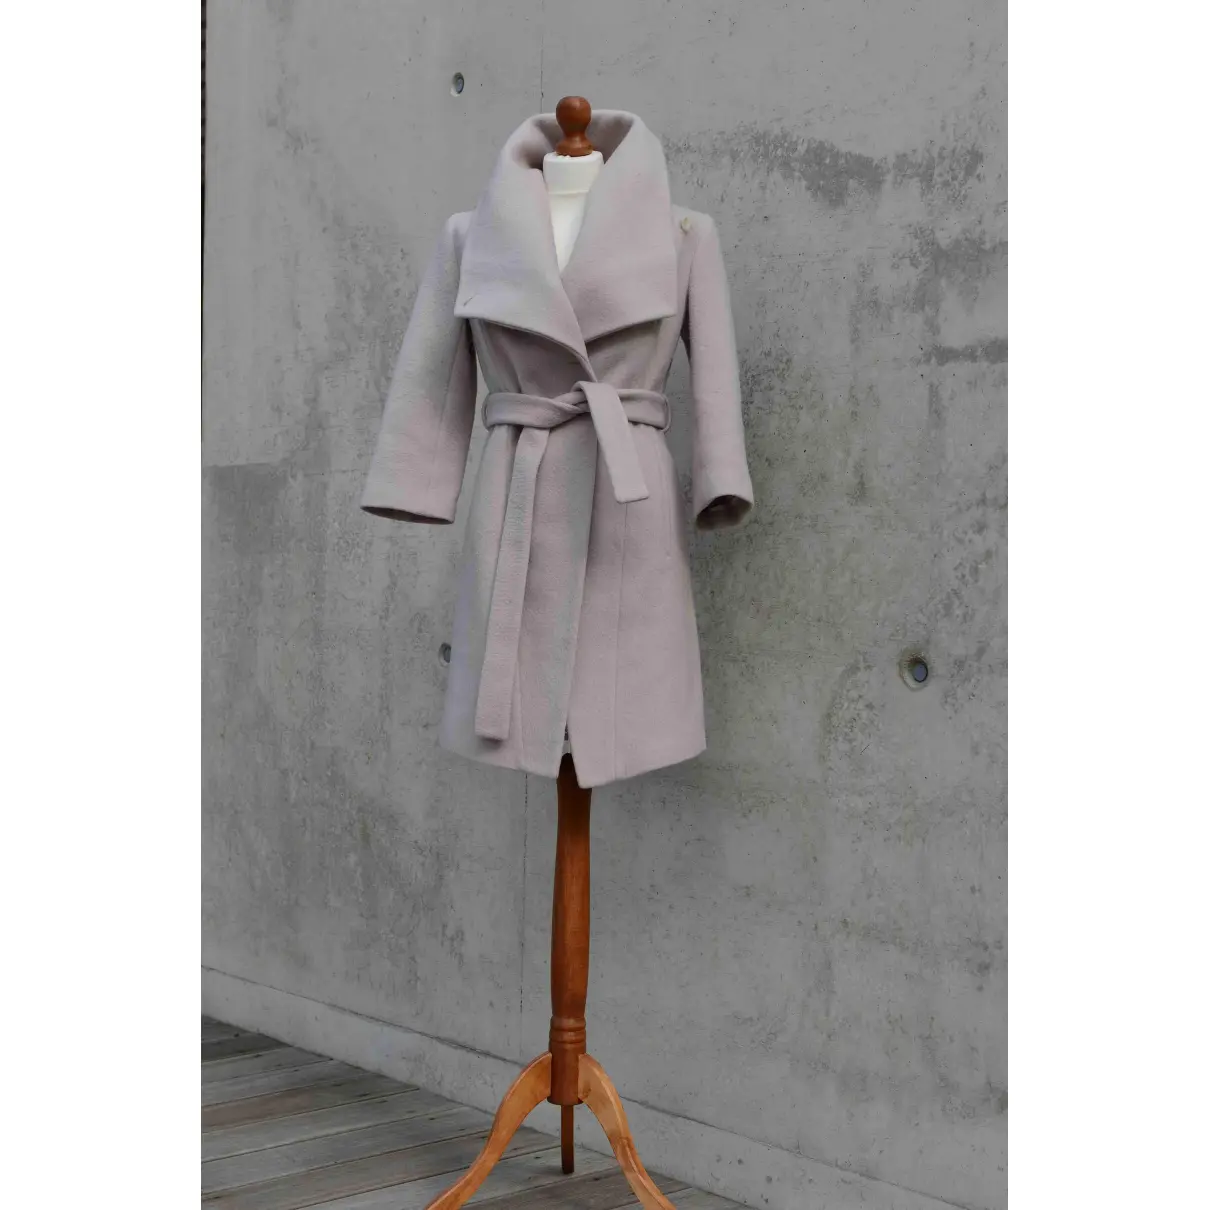 Buy Karen Millen Wool coat online